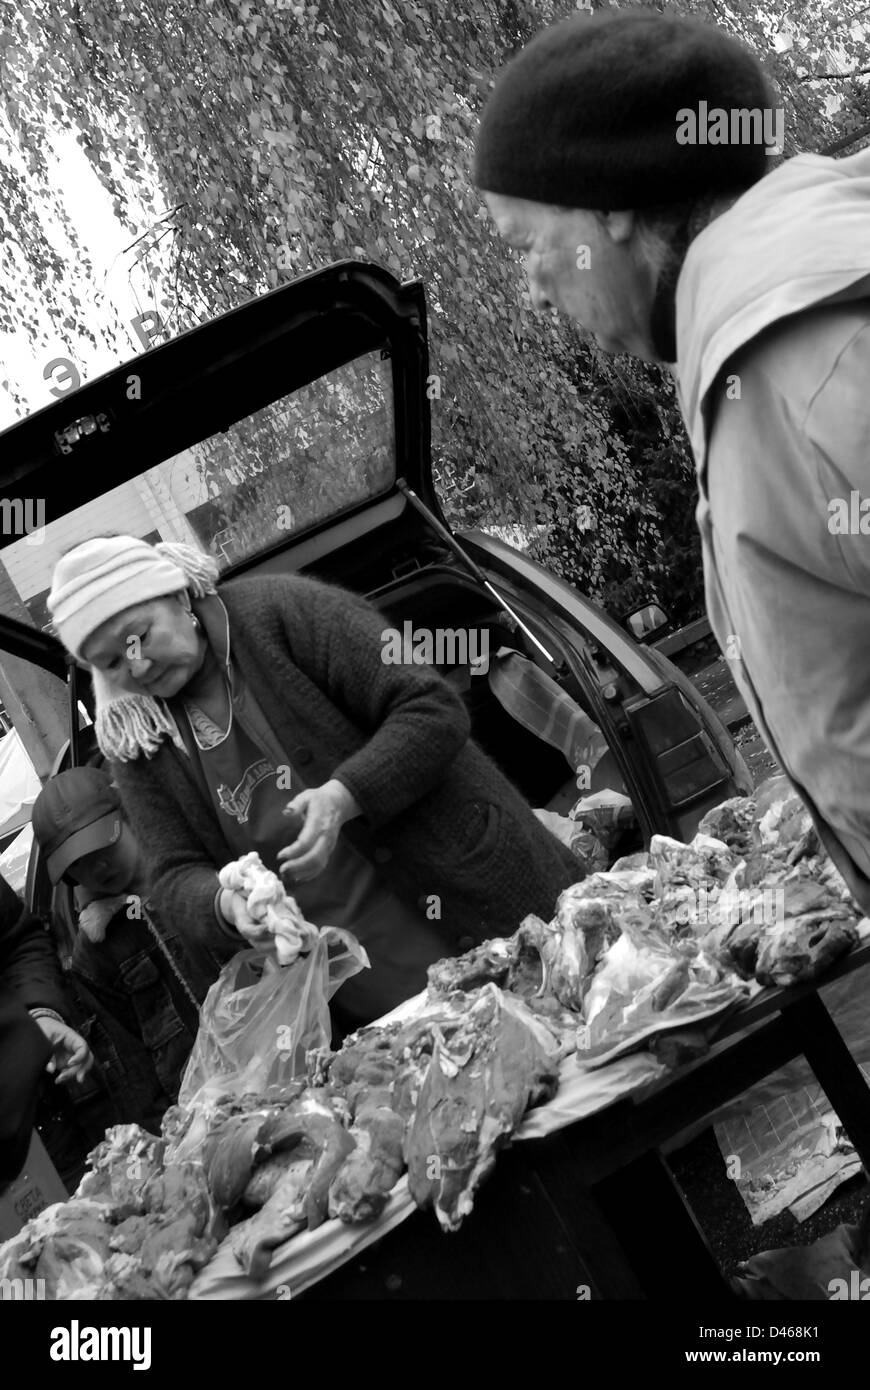 Food stall in open market, Almaty, Kazakhstan Stock Photo